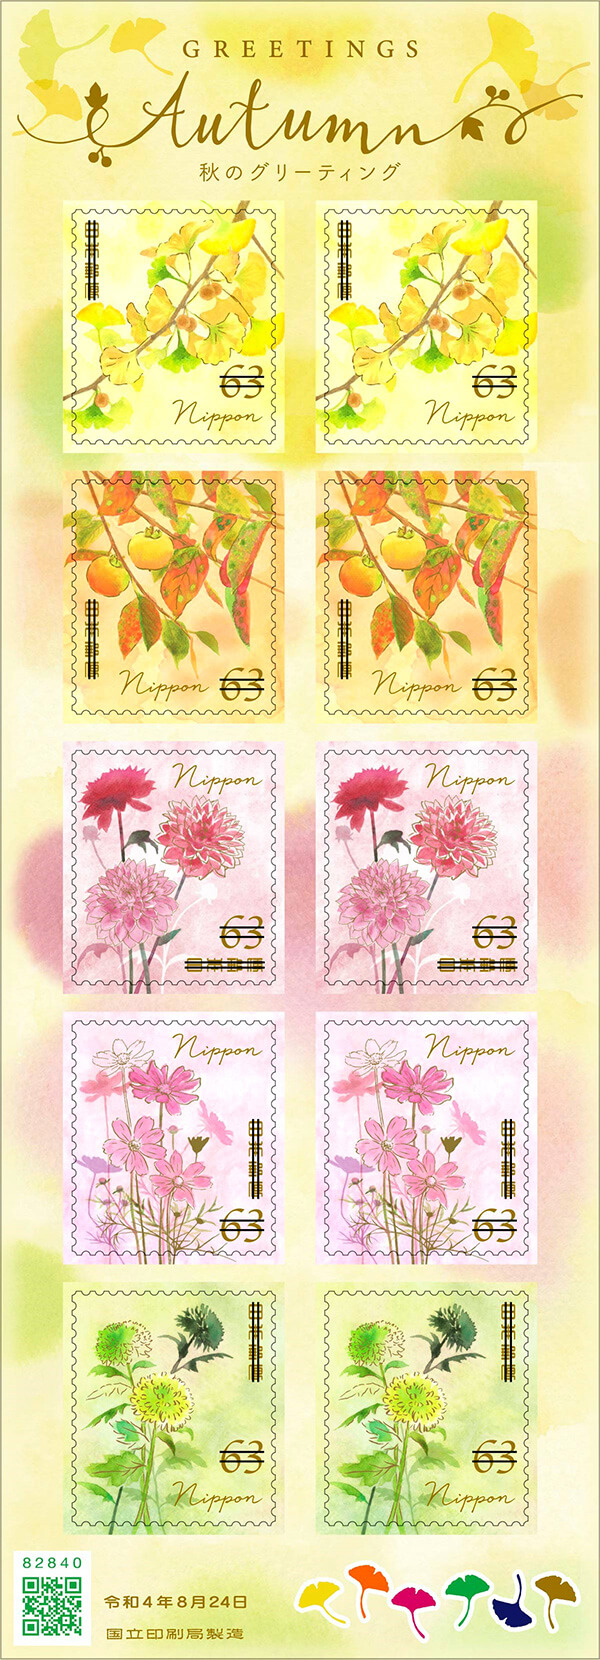 63円郵便切手（シール式）